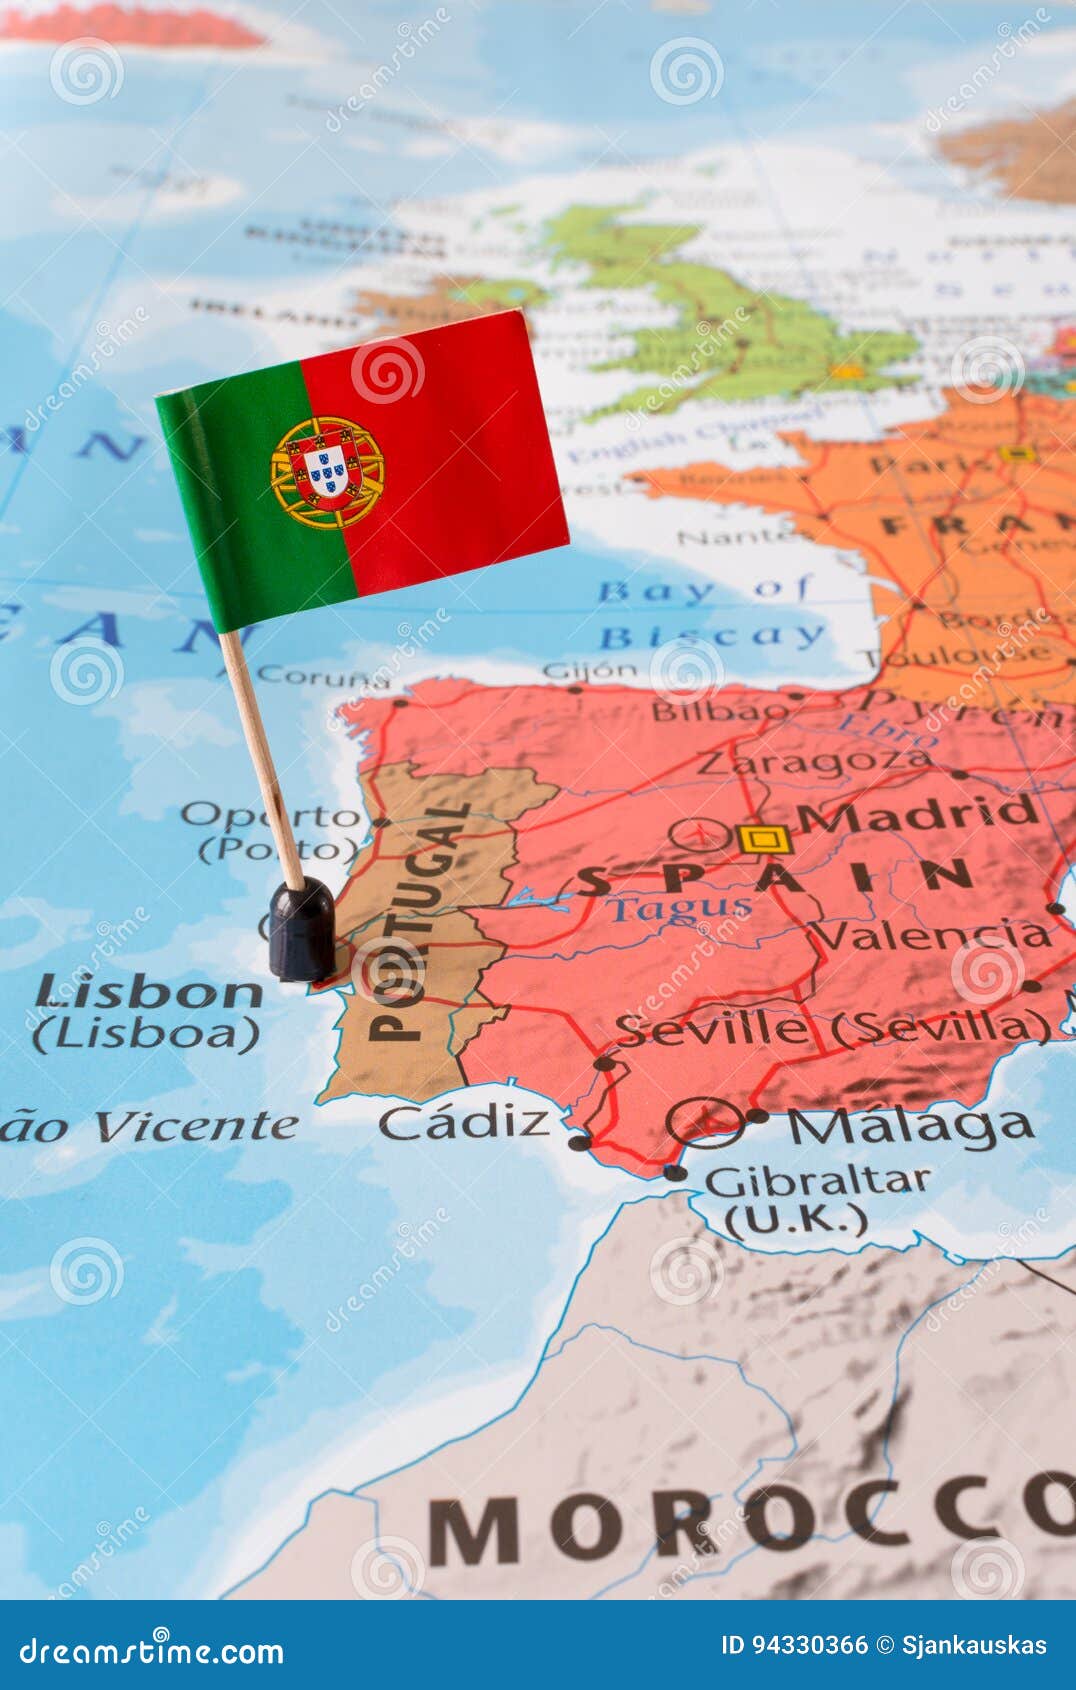 610+ Mapa De Portugal E Ilhas fotos de stock, imagens e fotos